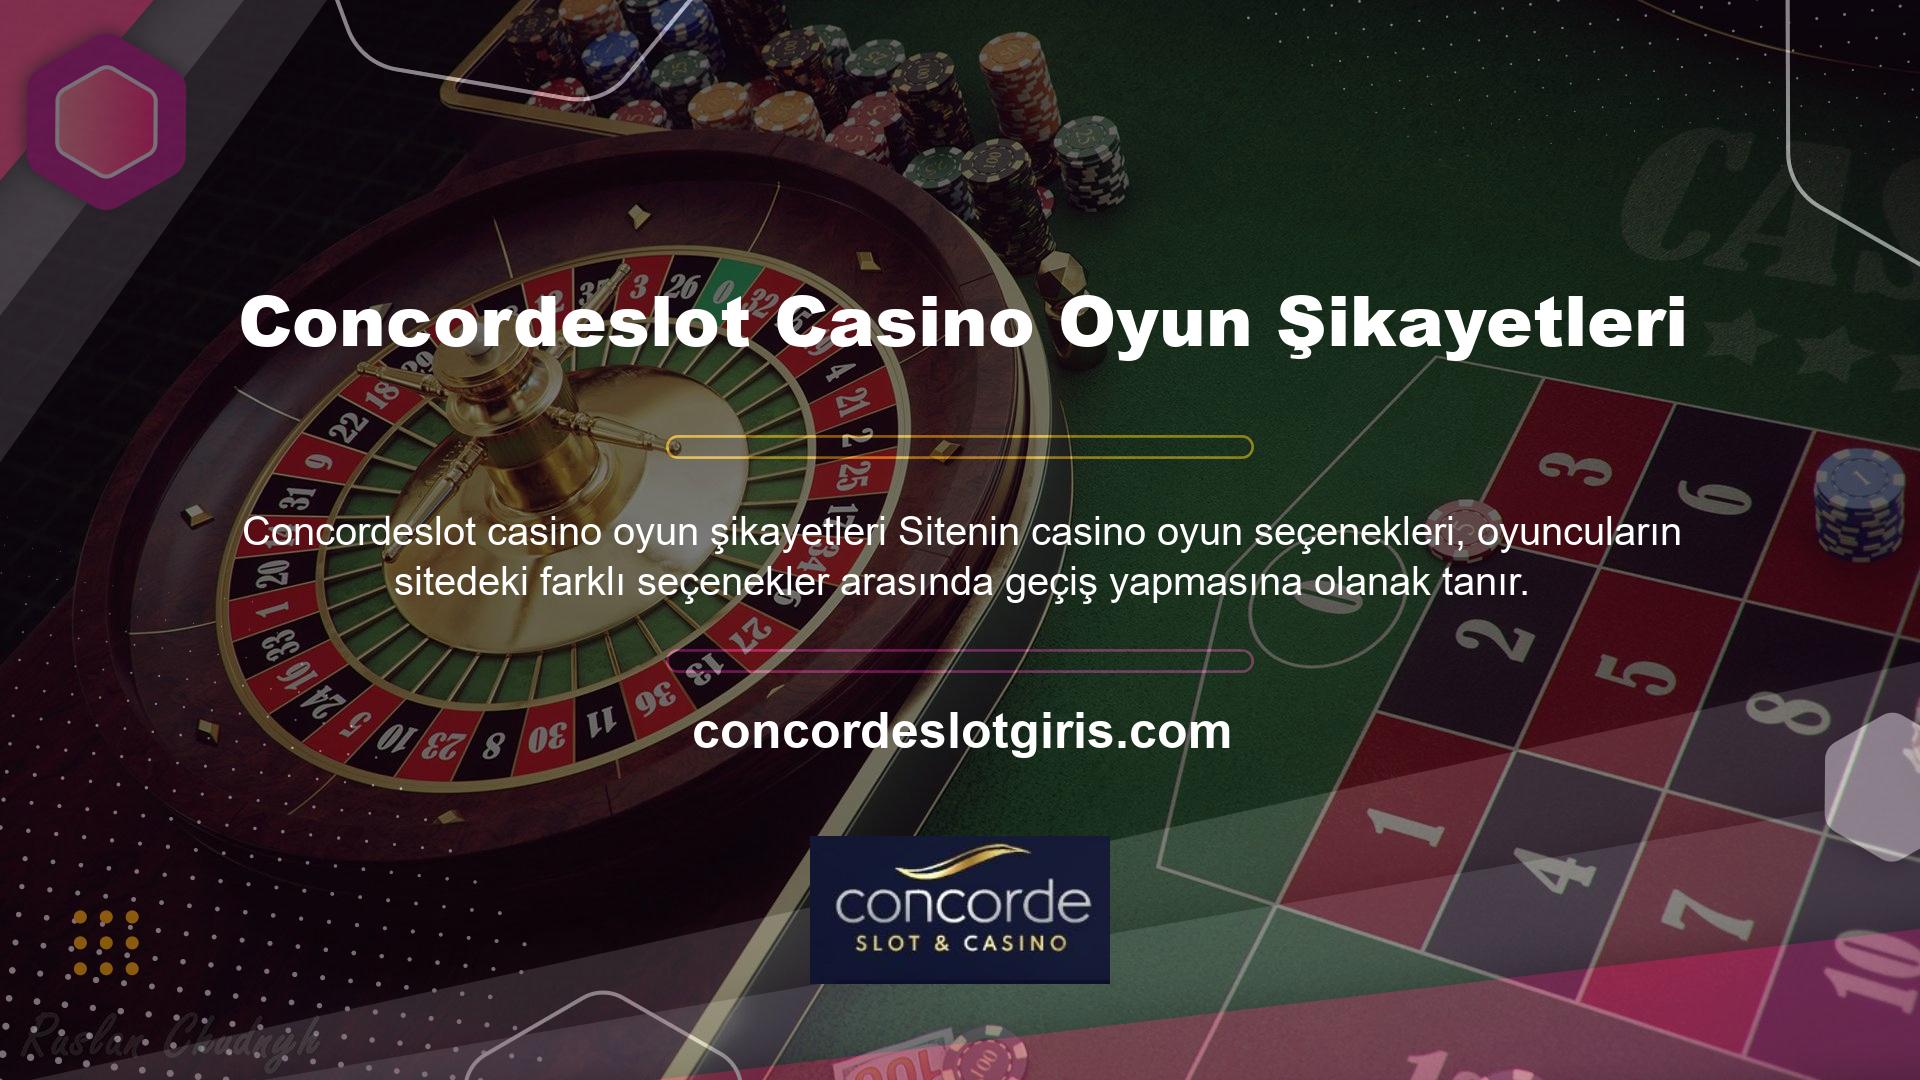 Site, bahisçilere Concordeslot casino oyunlarında herhangi bir şikayet olmadan bahis yapabilmeleri için gerekli bahis kurallarını sunmaktadır